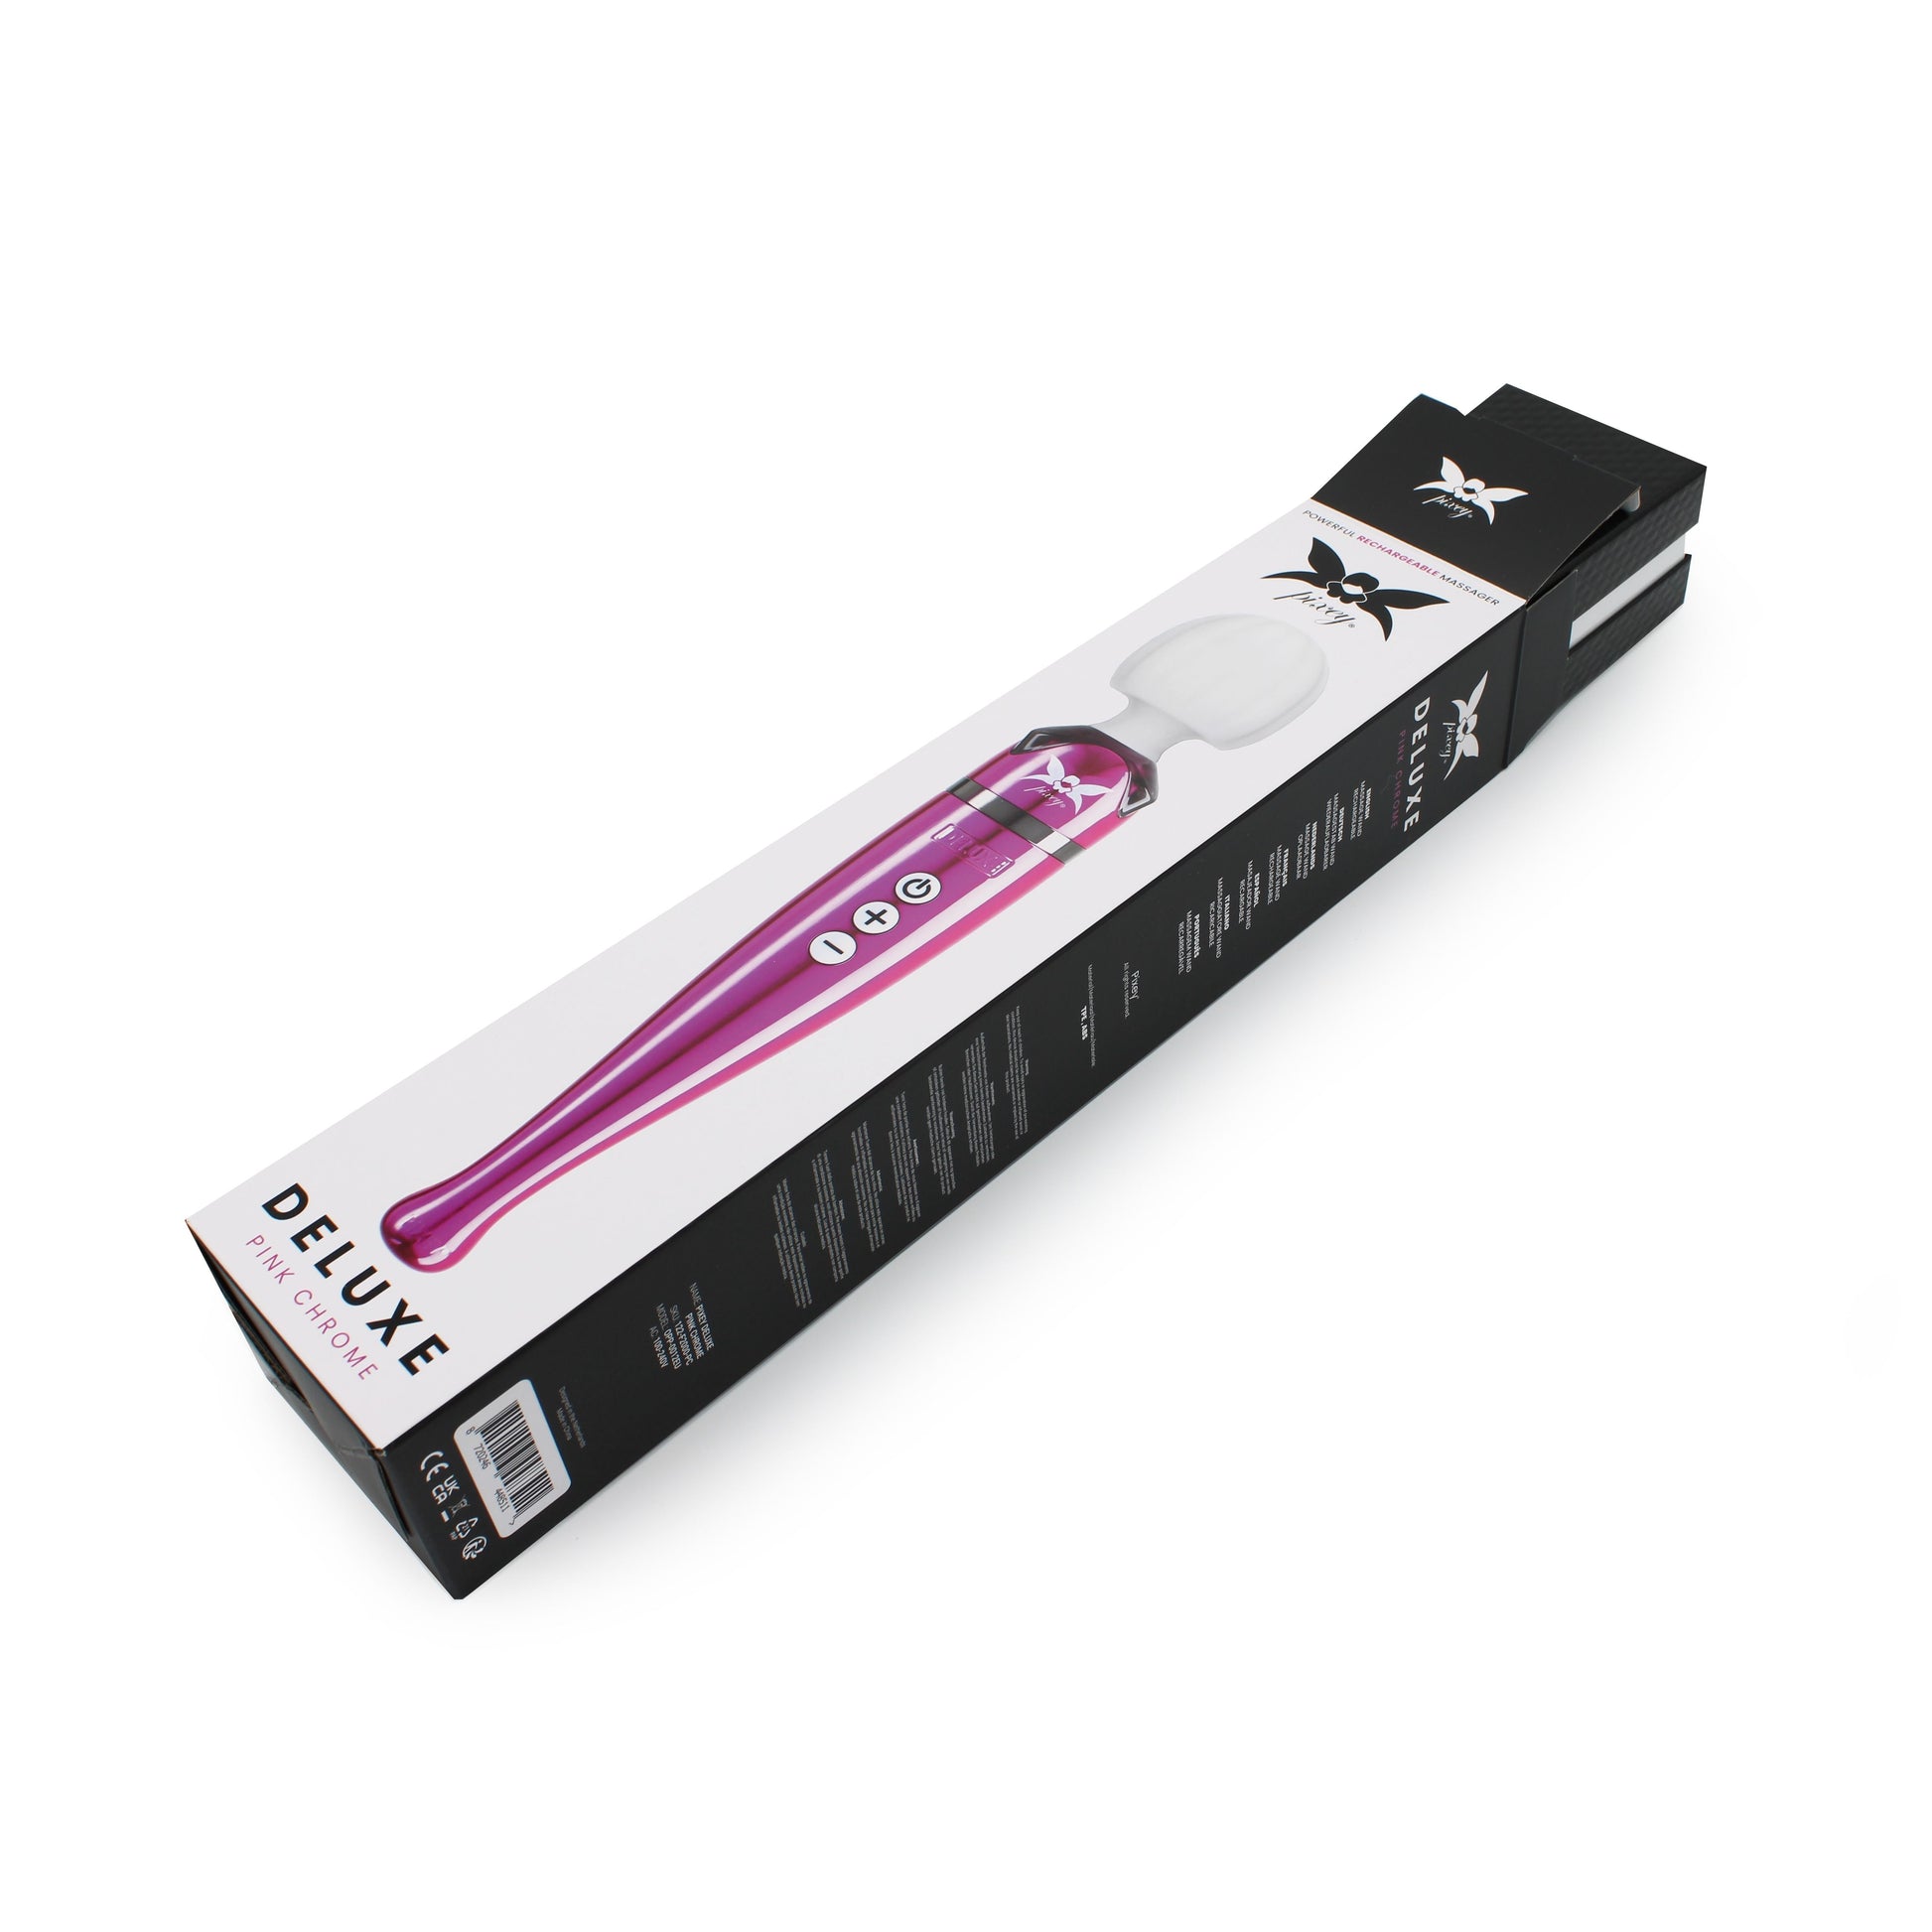 Pixey DeLuxe - Pink Chrome Edition - Oplaadbare Wand Vibrator - de krachtigste die er is-Erotiekvoordeel.nl